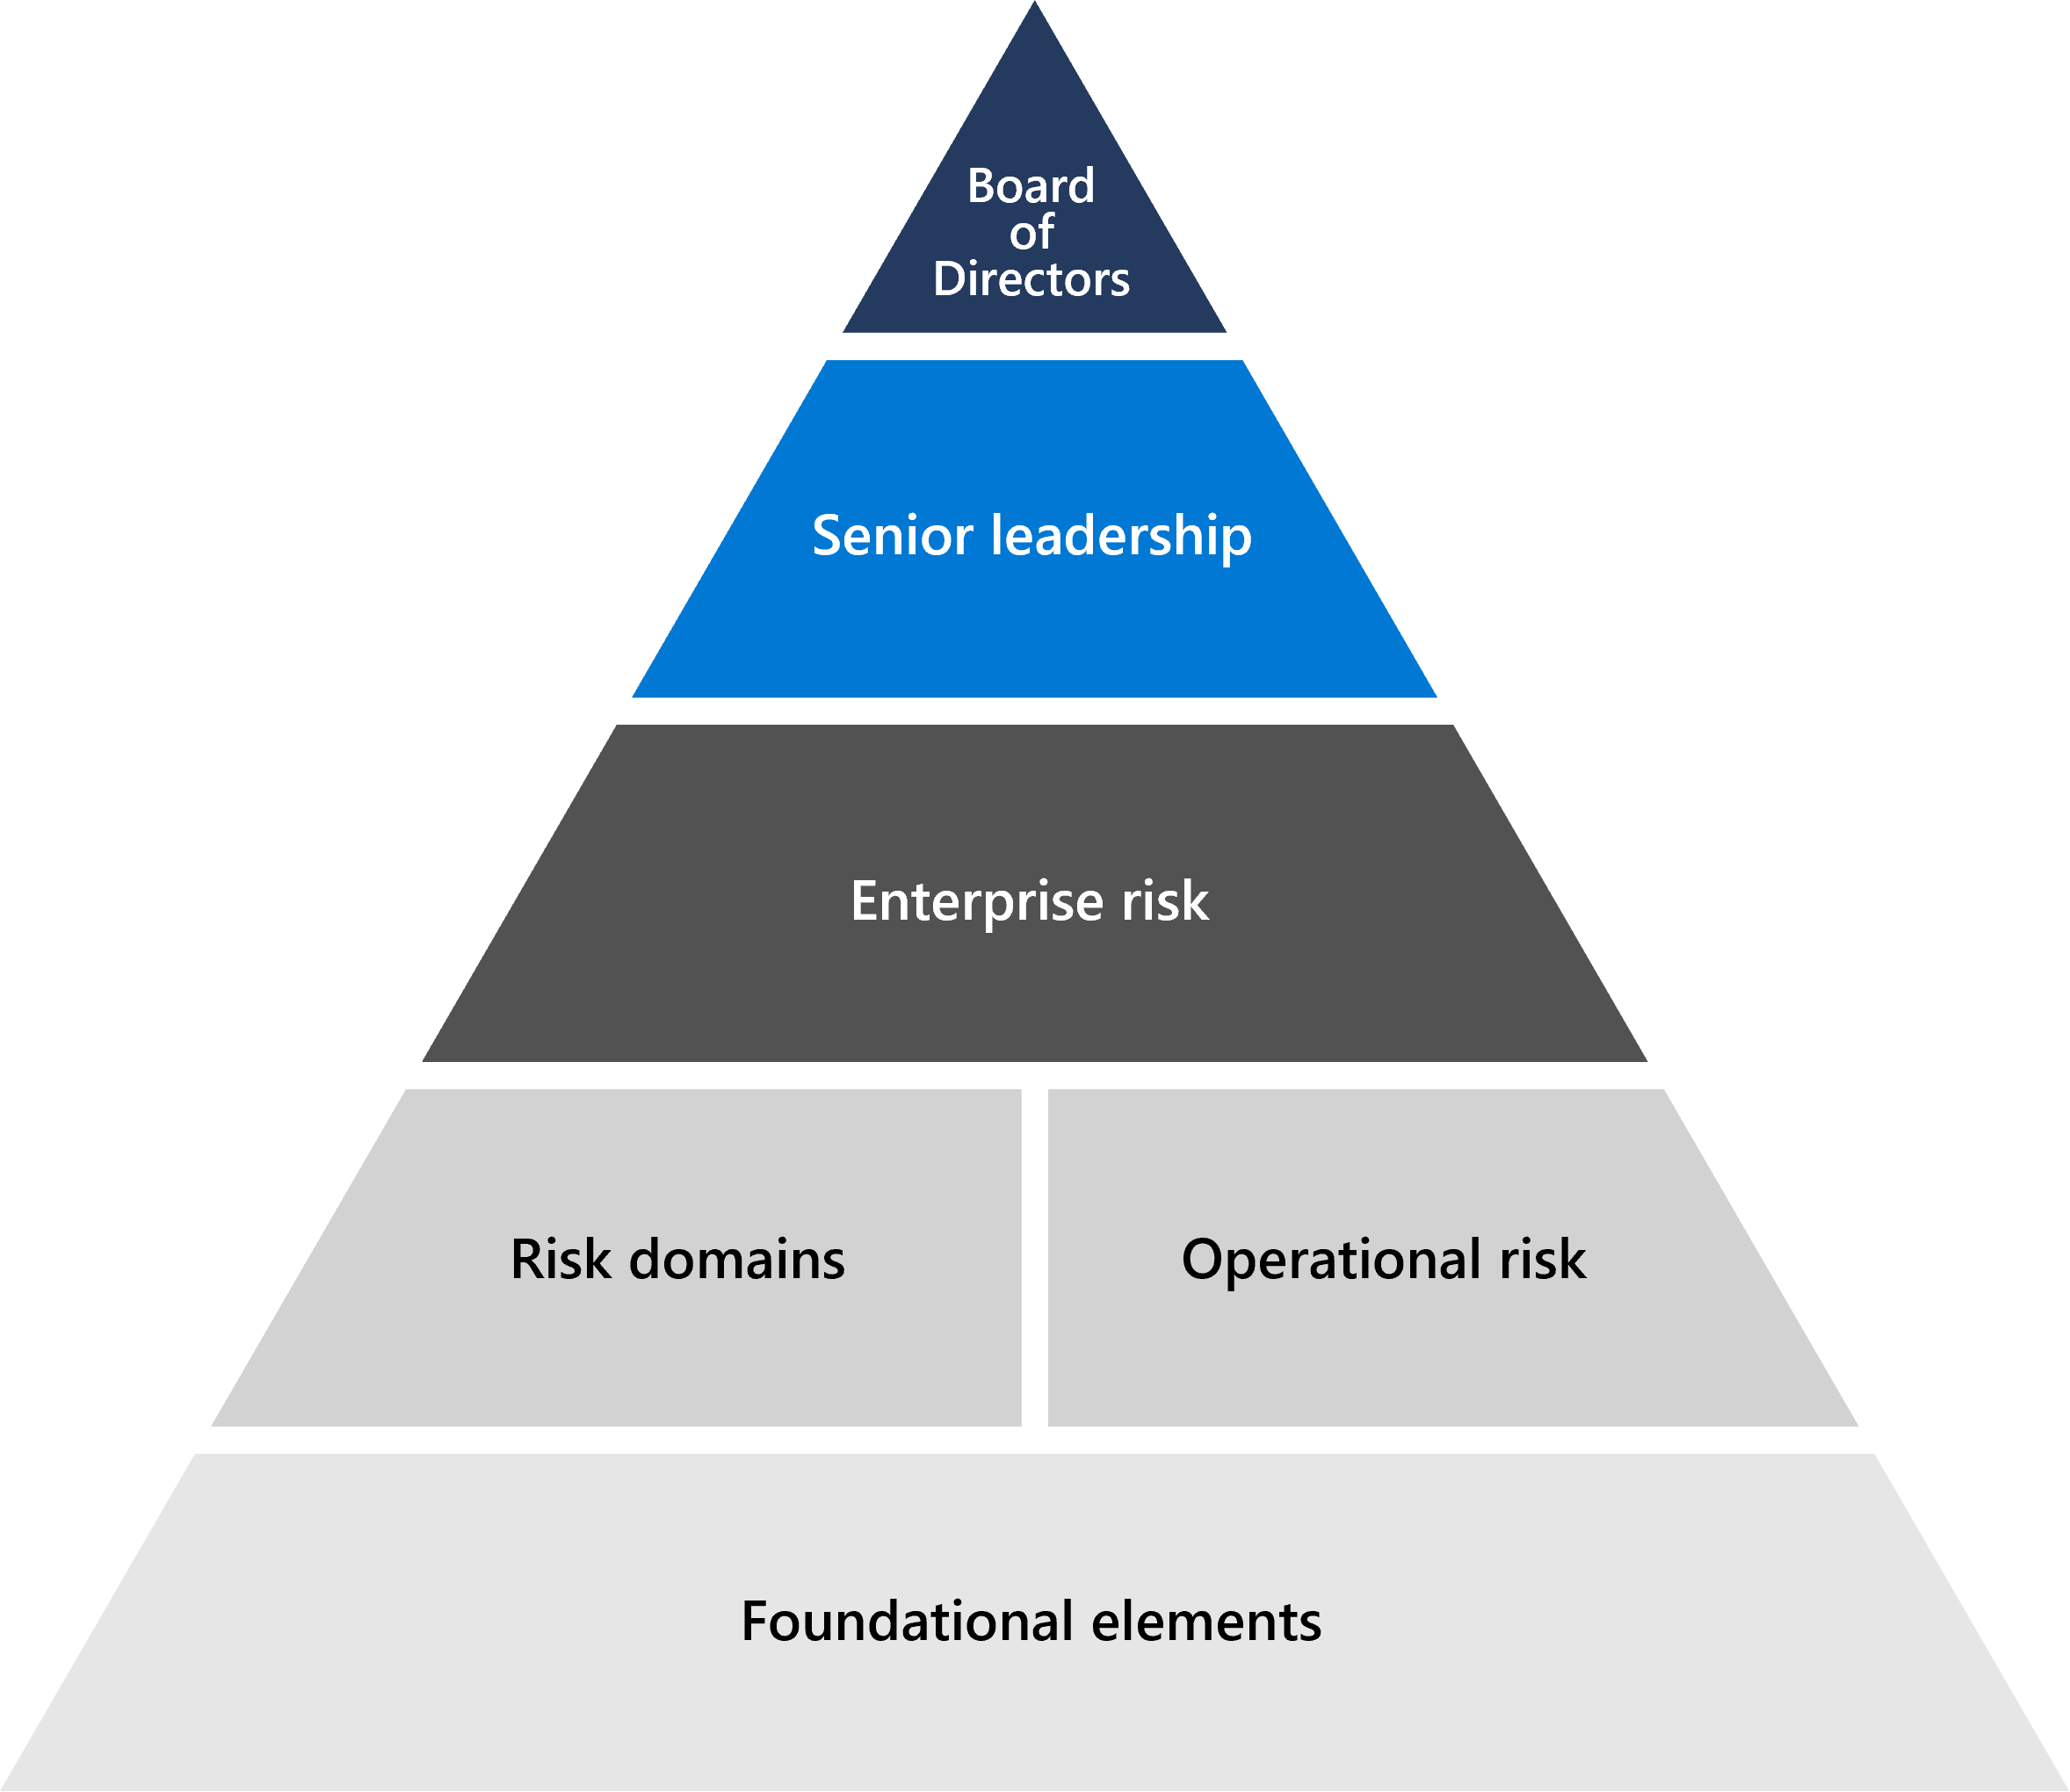 이사회, 고위 경영진, 엔터프라이즈 위험으로 시작하여 위에서부터 Microsoft 위험 관리의 기초를 보여주는 피라미드 다이어그램입니다. 아래 선은 위험 영역 및 운영 영역이며 삼각형의 아래쪽은 청취 시스템, 방법론 및 도구로 구성된 기본 요소입니다.